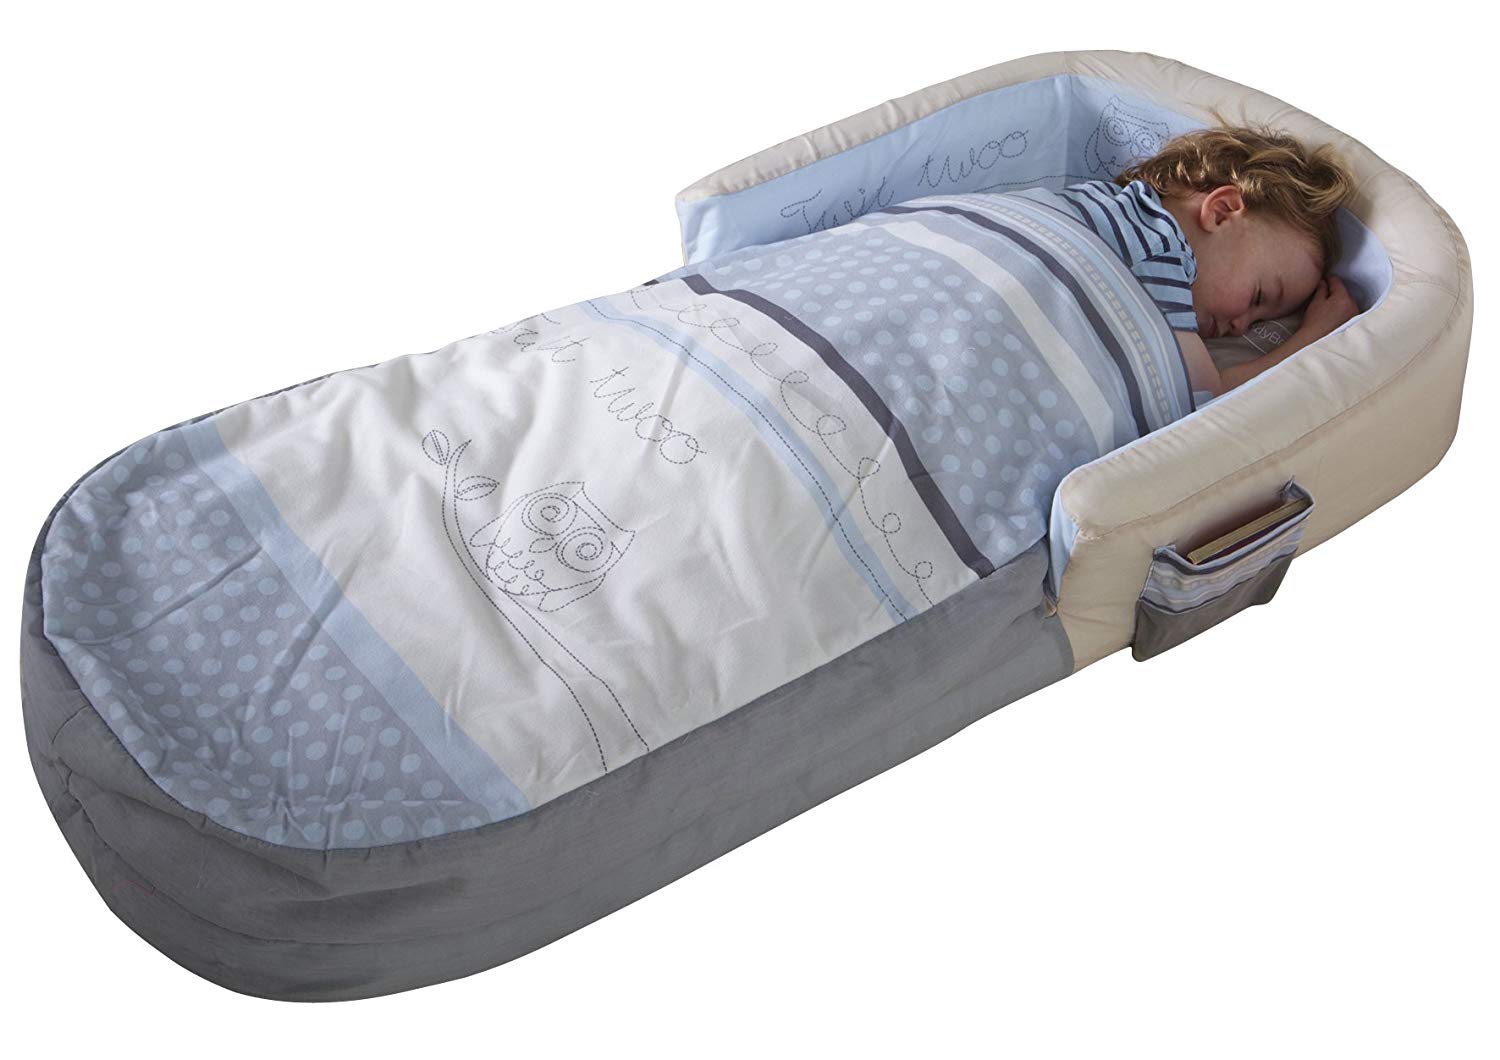 sleeping bag built in mattress